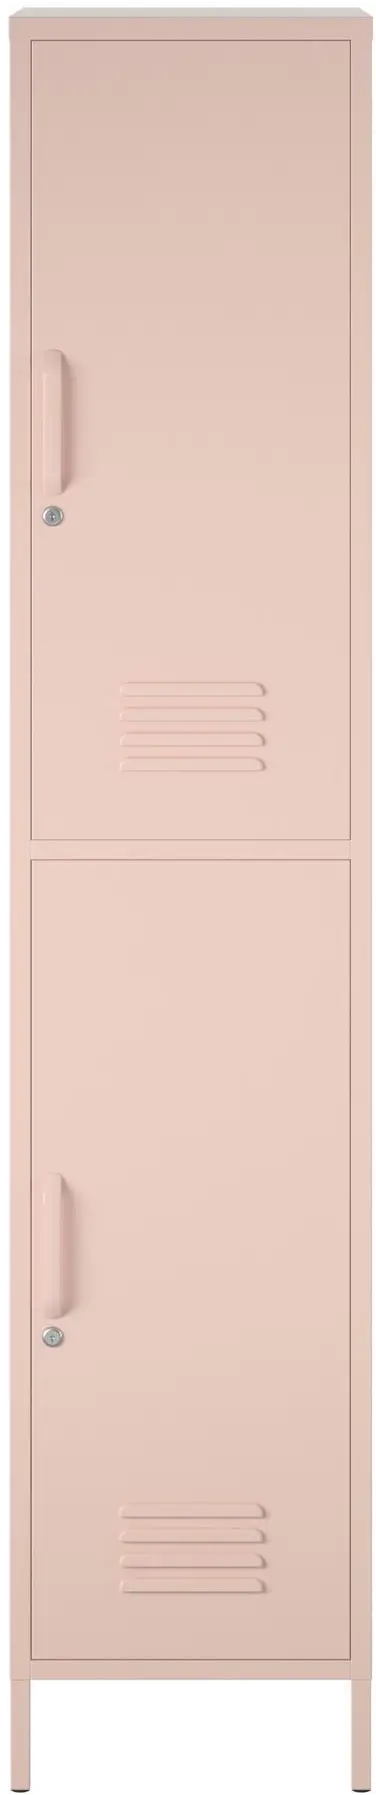 Evolution 2 Door Pink Locker